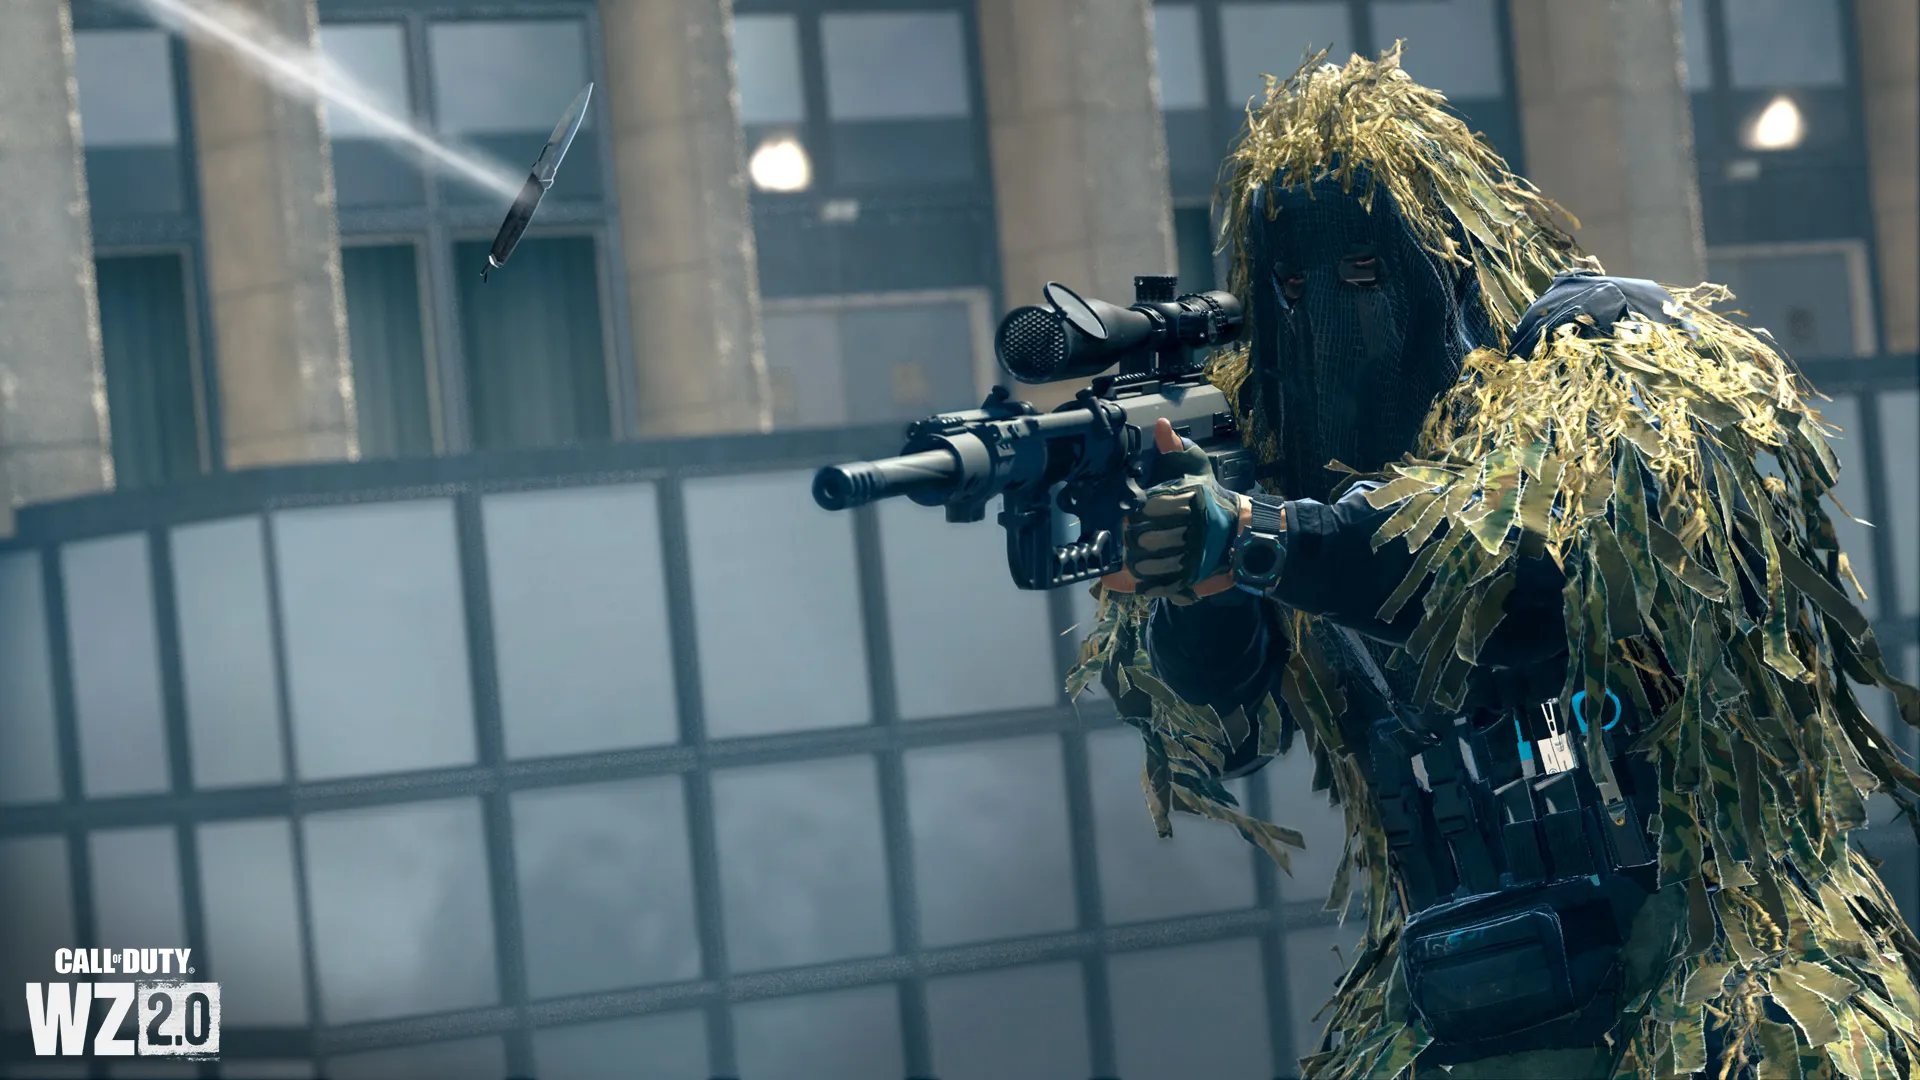 Sniper Call of Duty, który ma zostać uderzony nożem do rzucania